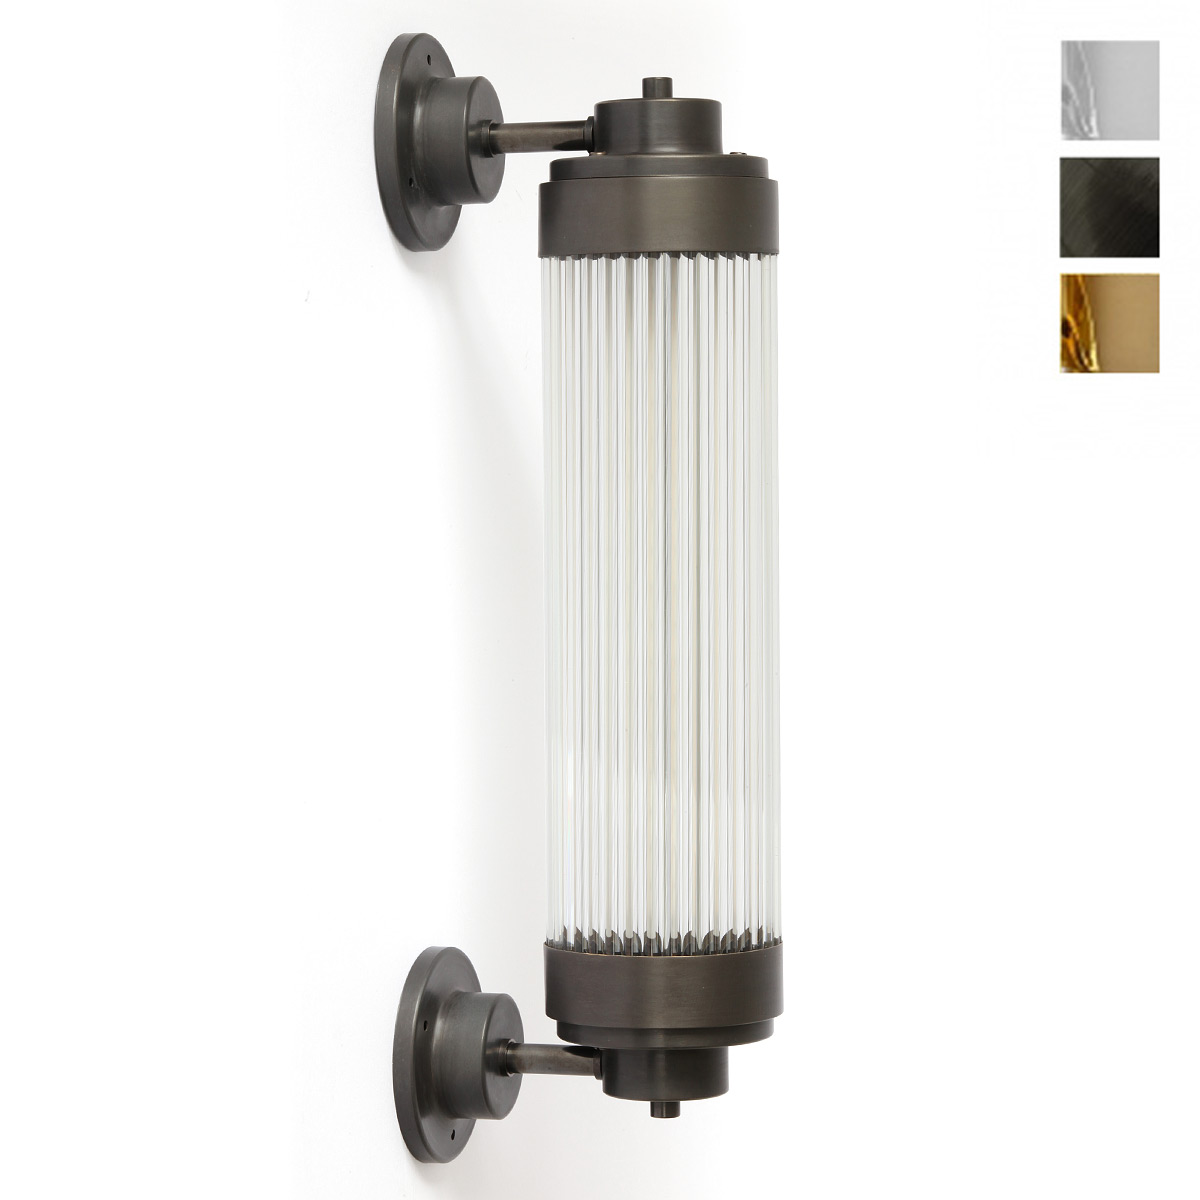 Exklusive LED-Wandleuchte, ideal für Badezimmer-Spiegel: LED-Wandleuchte mit Glasstäbchen-Mantel im Art Déco Stil, hier in Messing patiniert